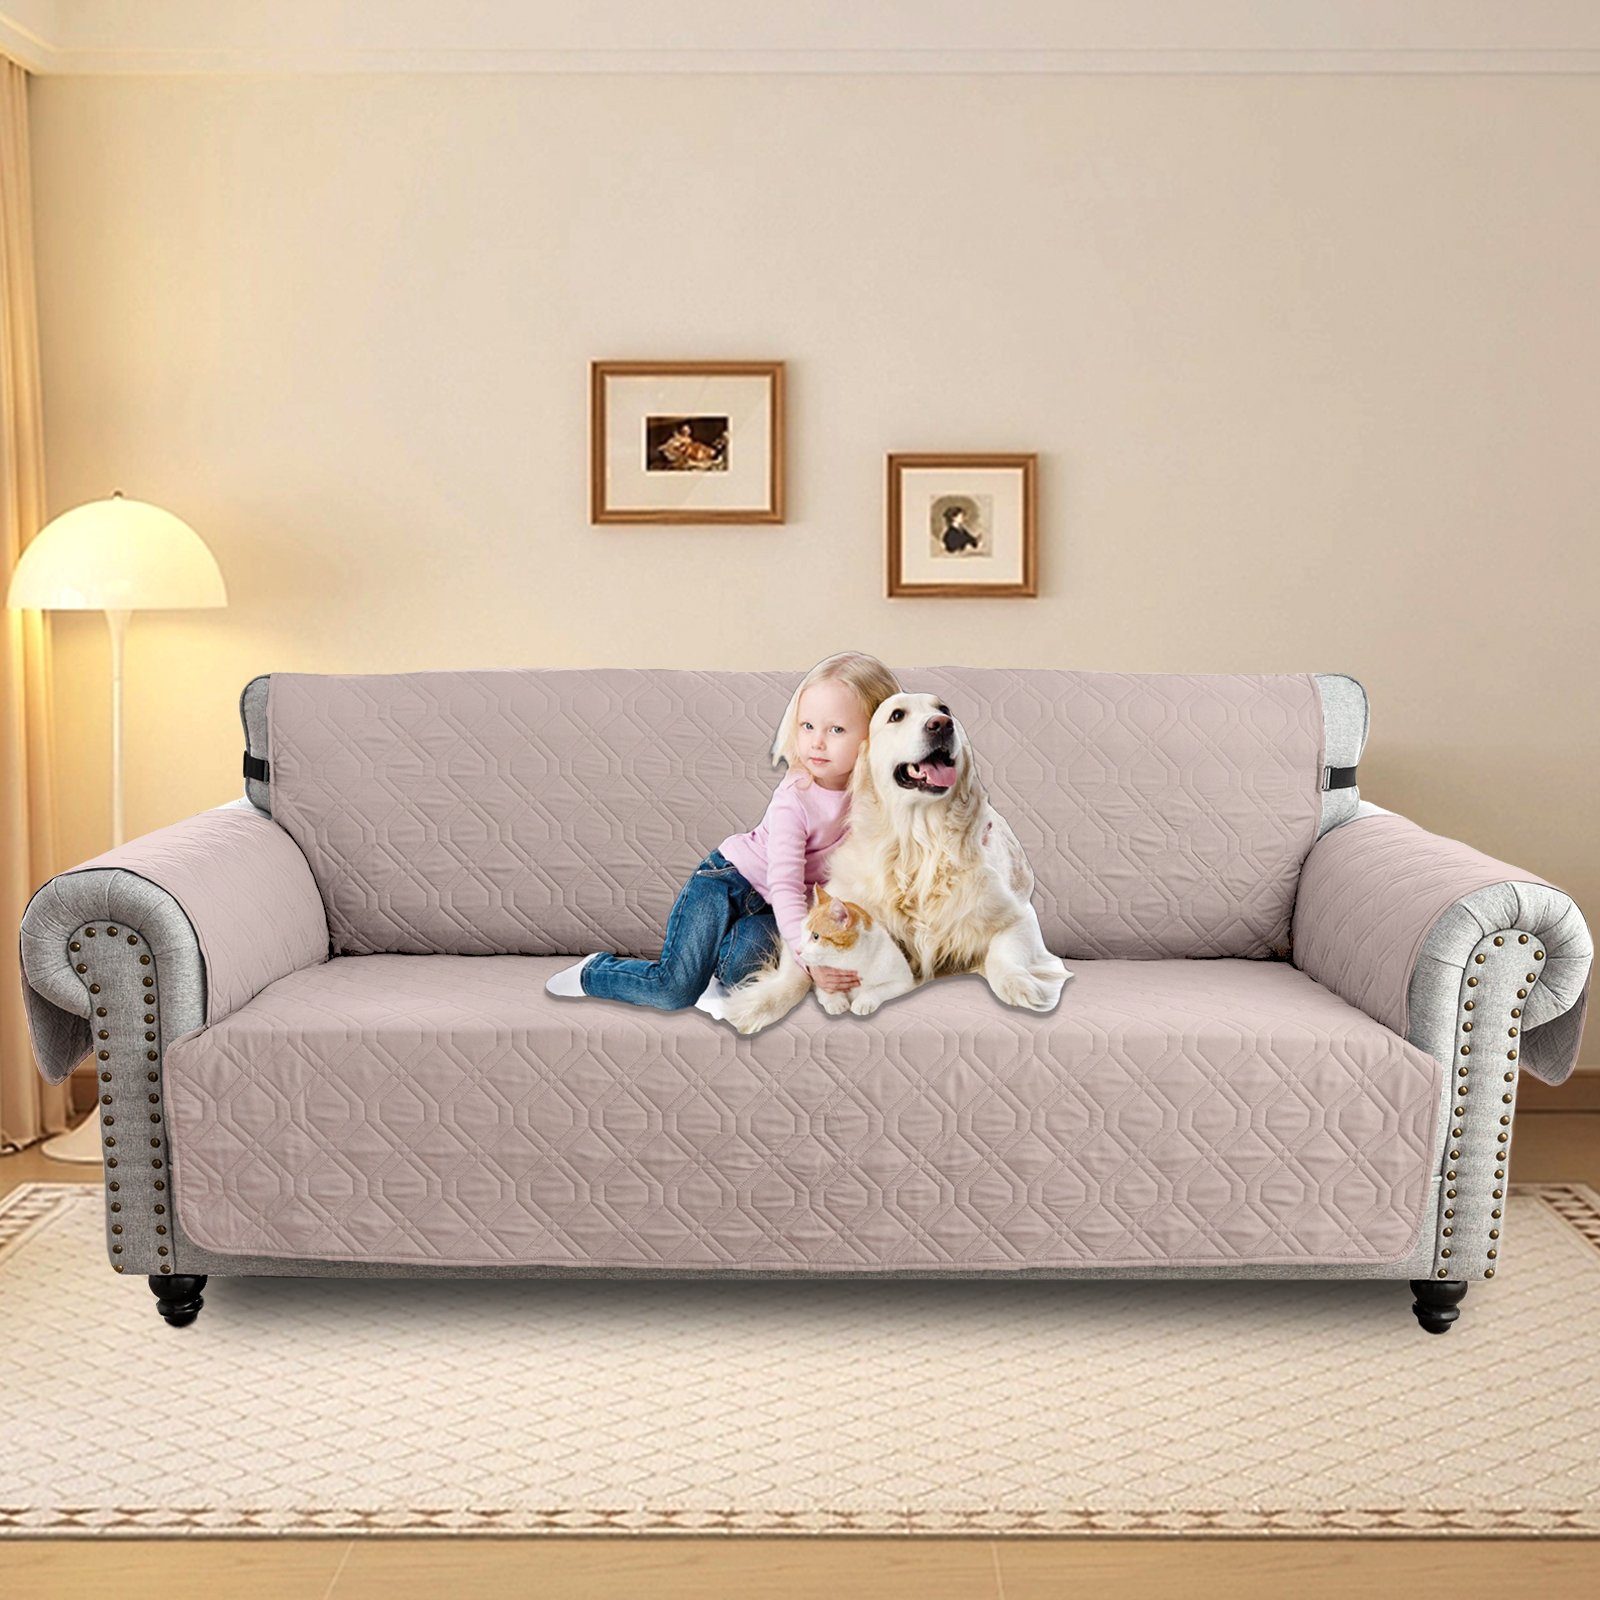 Sesselschoner Sunicol, Armlehnenauflage Sofabezug Khaki Haustier Hunde Schutz 1-3Sitz, Sofa Überwurf Wasserdicht Sesselbezug Gesteppter Anti-Rutsch Couch